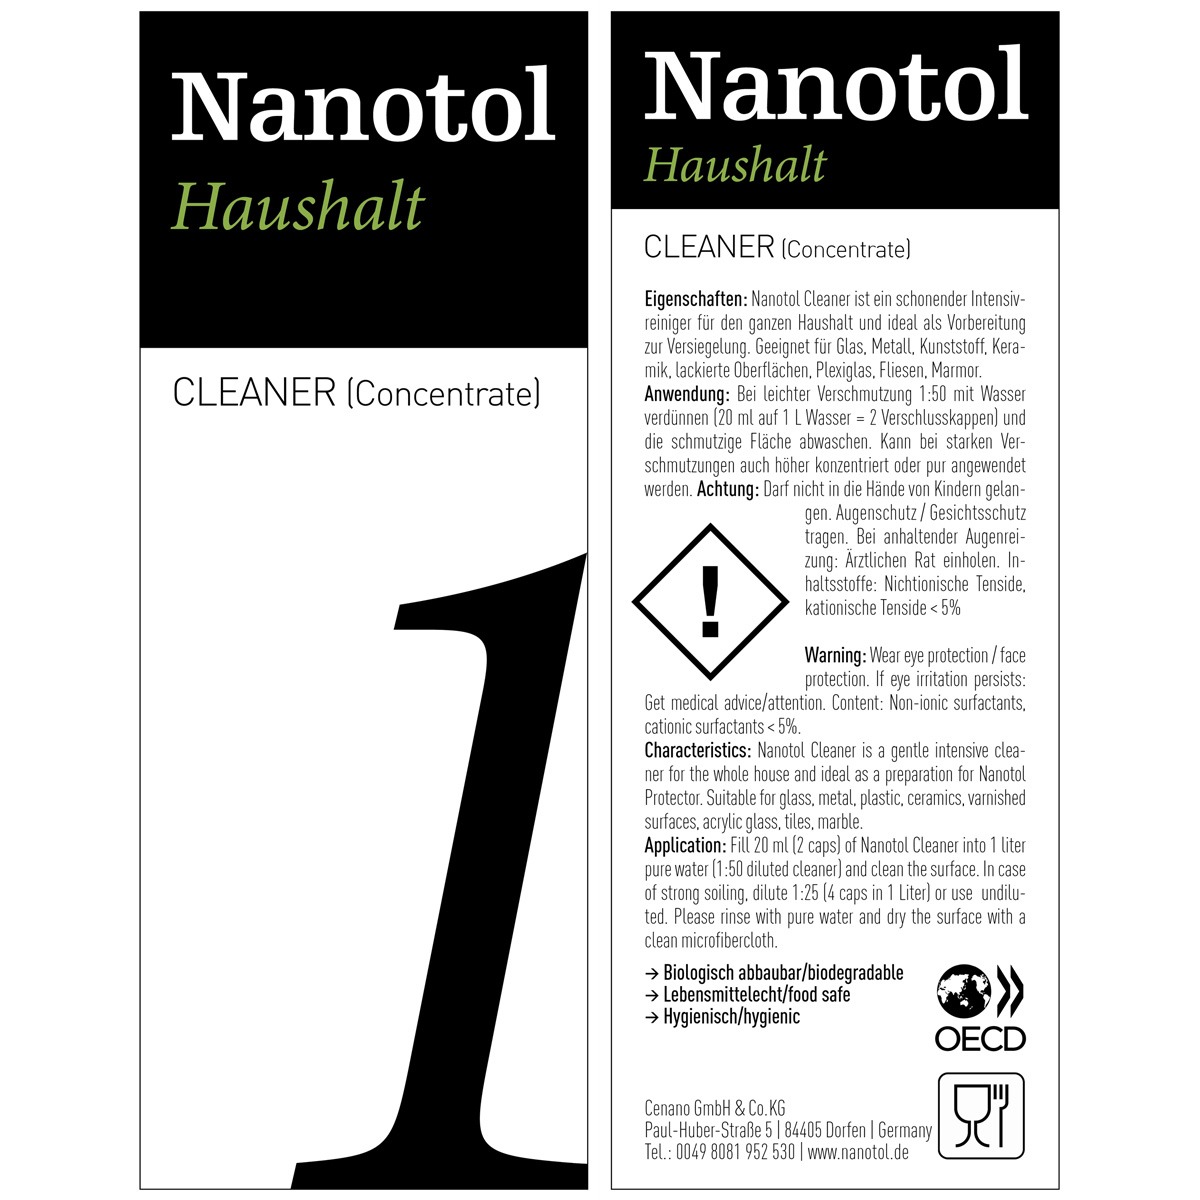 Etikett von Nanotol Haushalt Cleaner Konzentrat